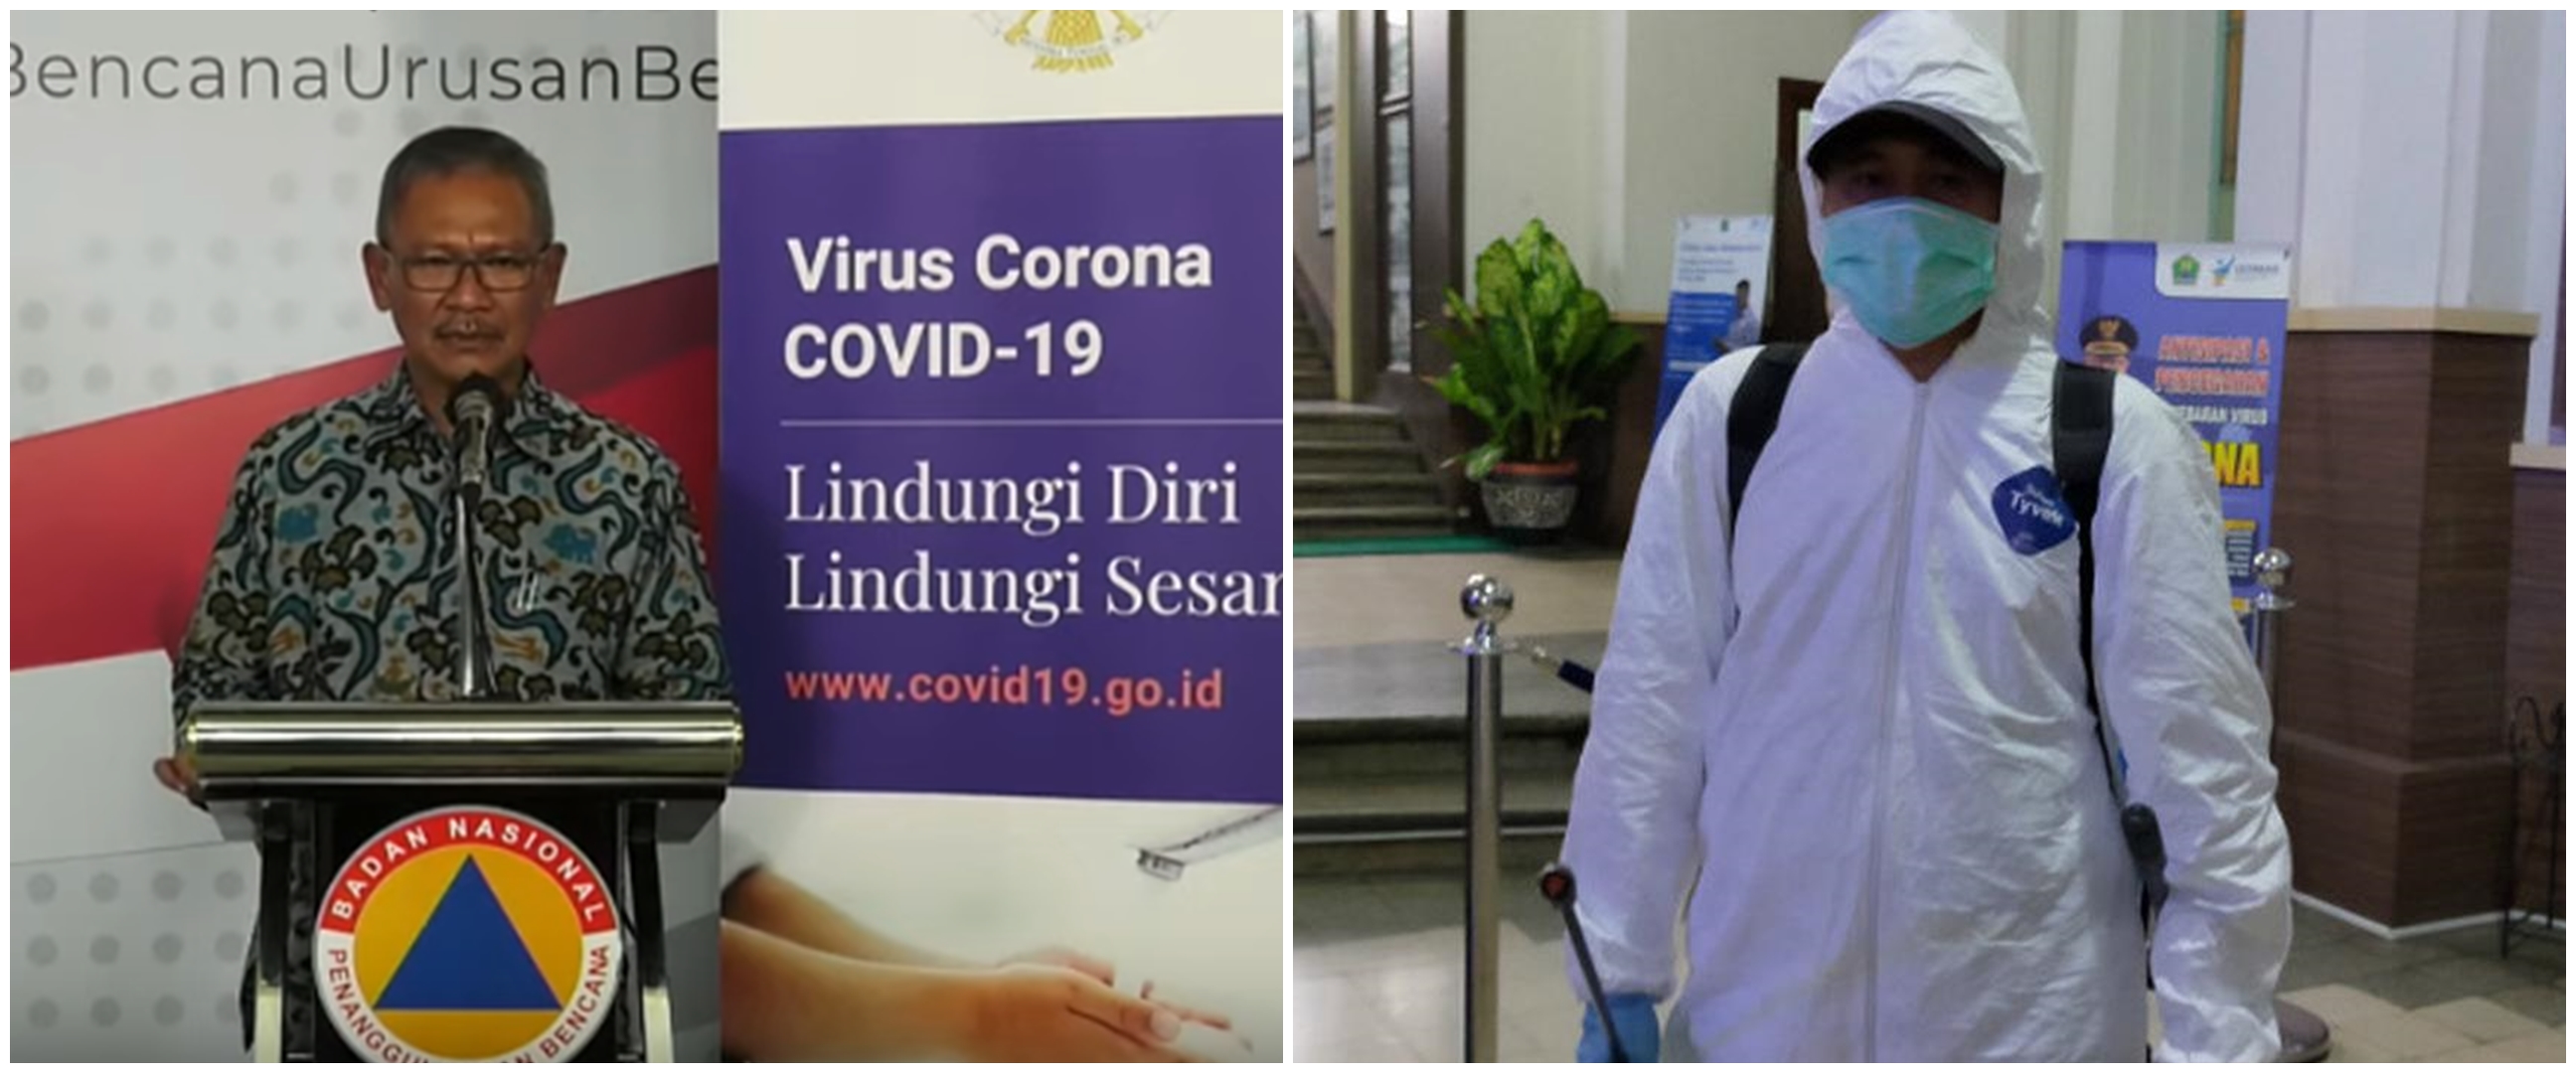 80 Persen pasien Corona di Indonesia alami gejala ringan-sedang